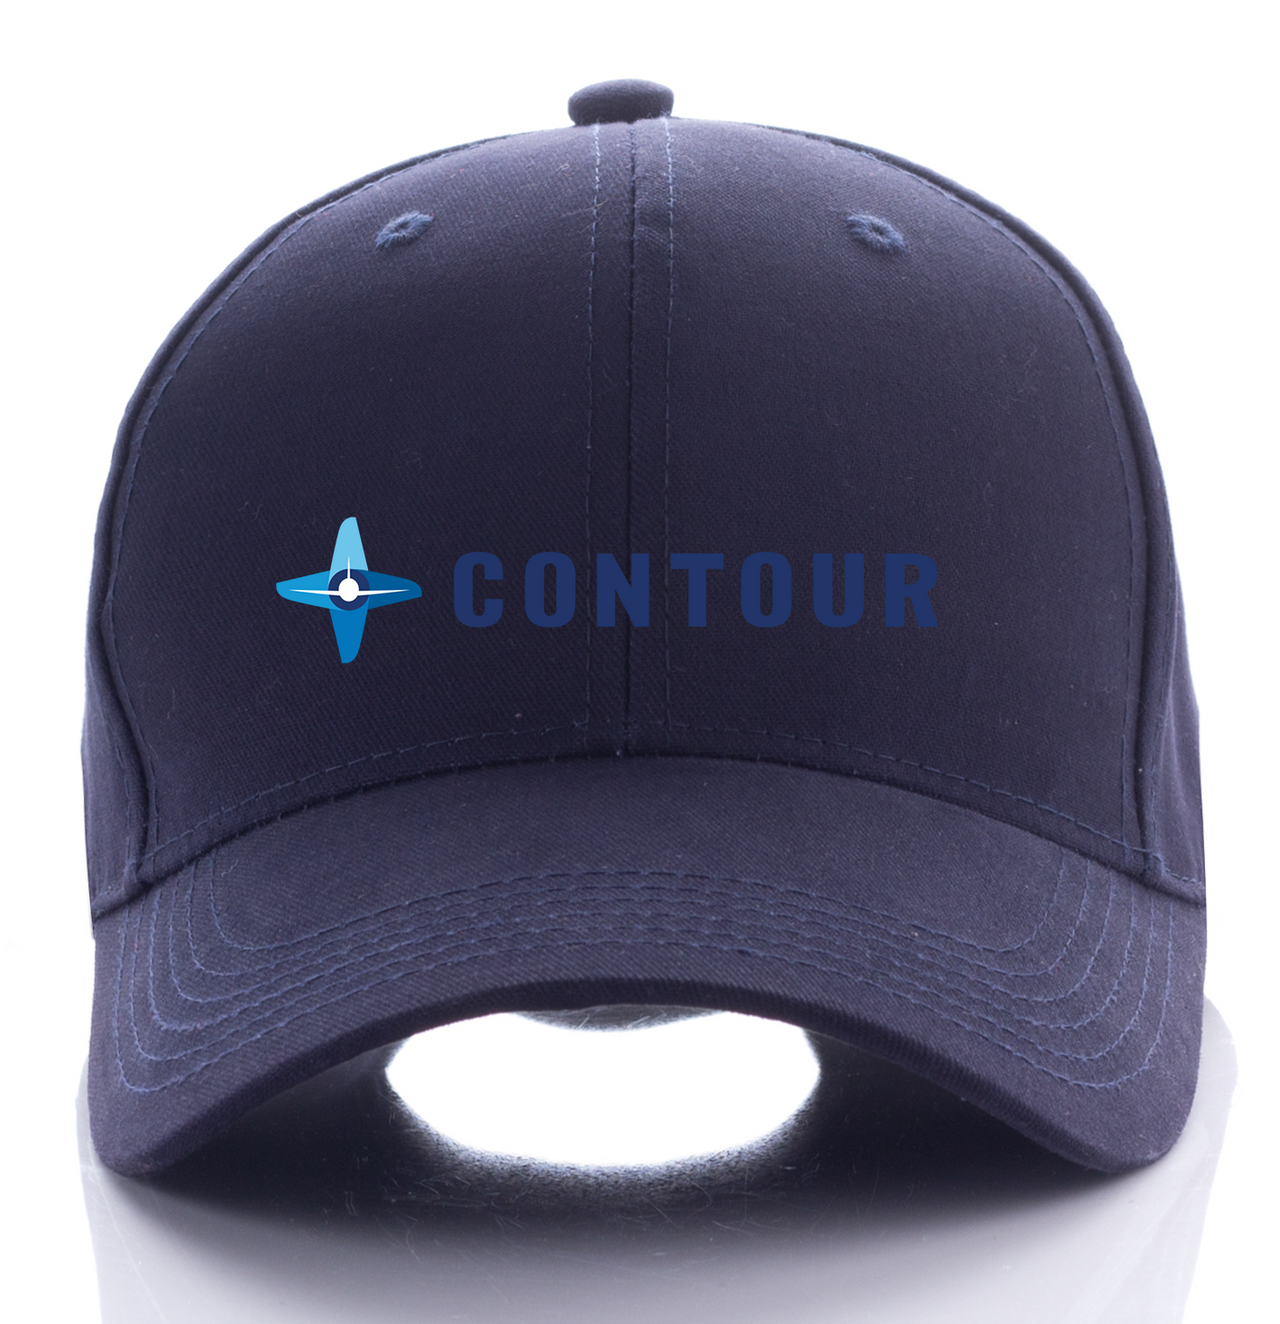 CONTOUR AIRLINE DESIGNED CAP